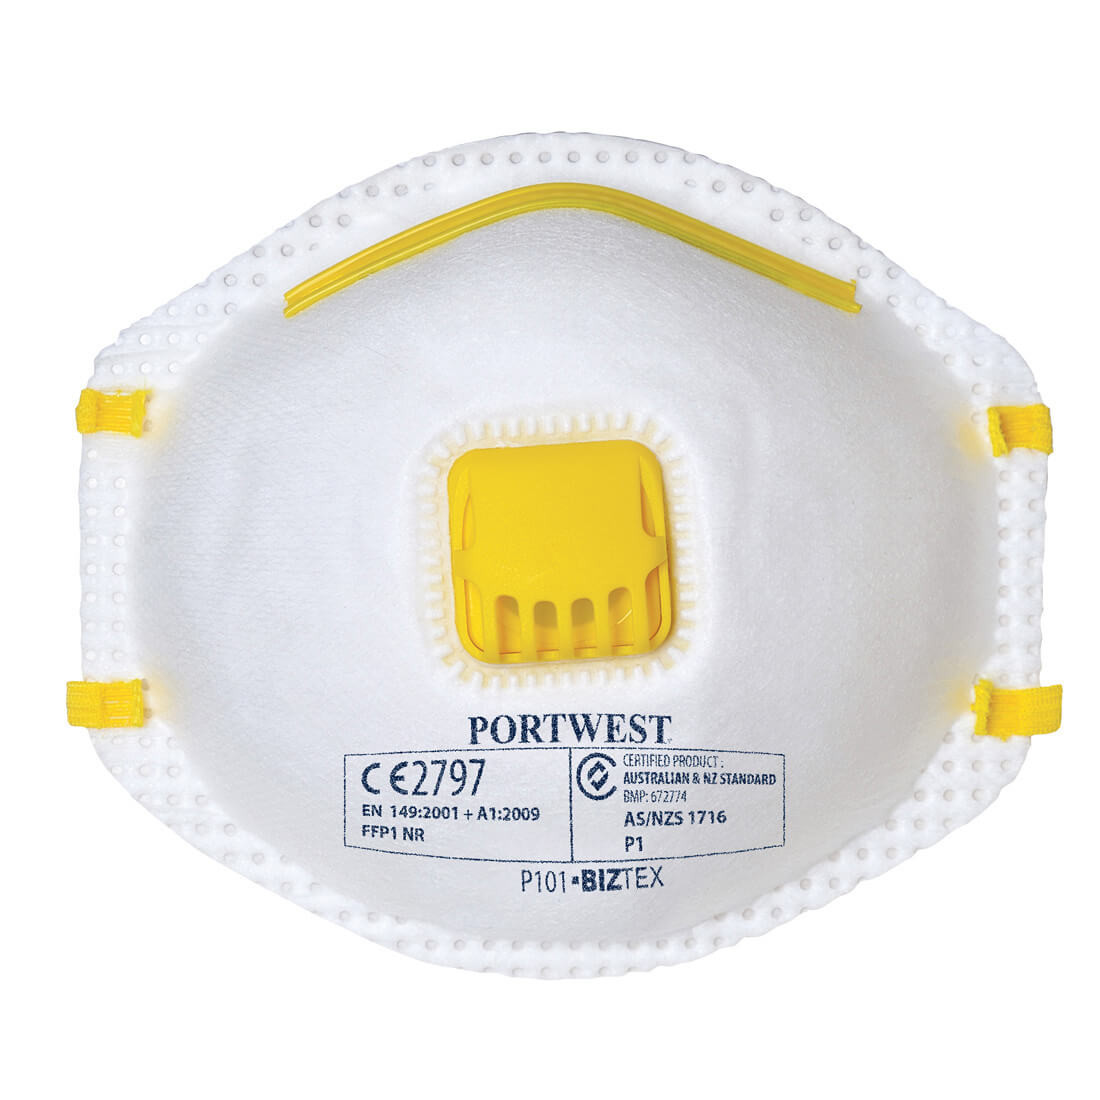 Máscarilla con válvula para polvo y niebla FFP1 - Equipamientos de protección personal